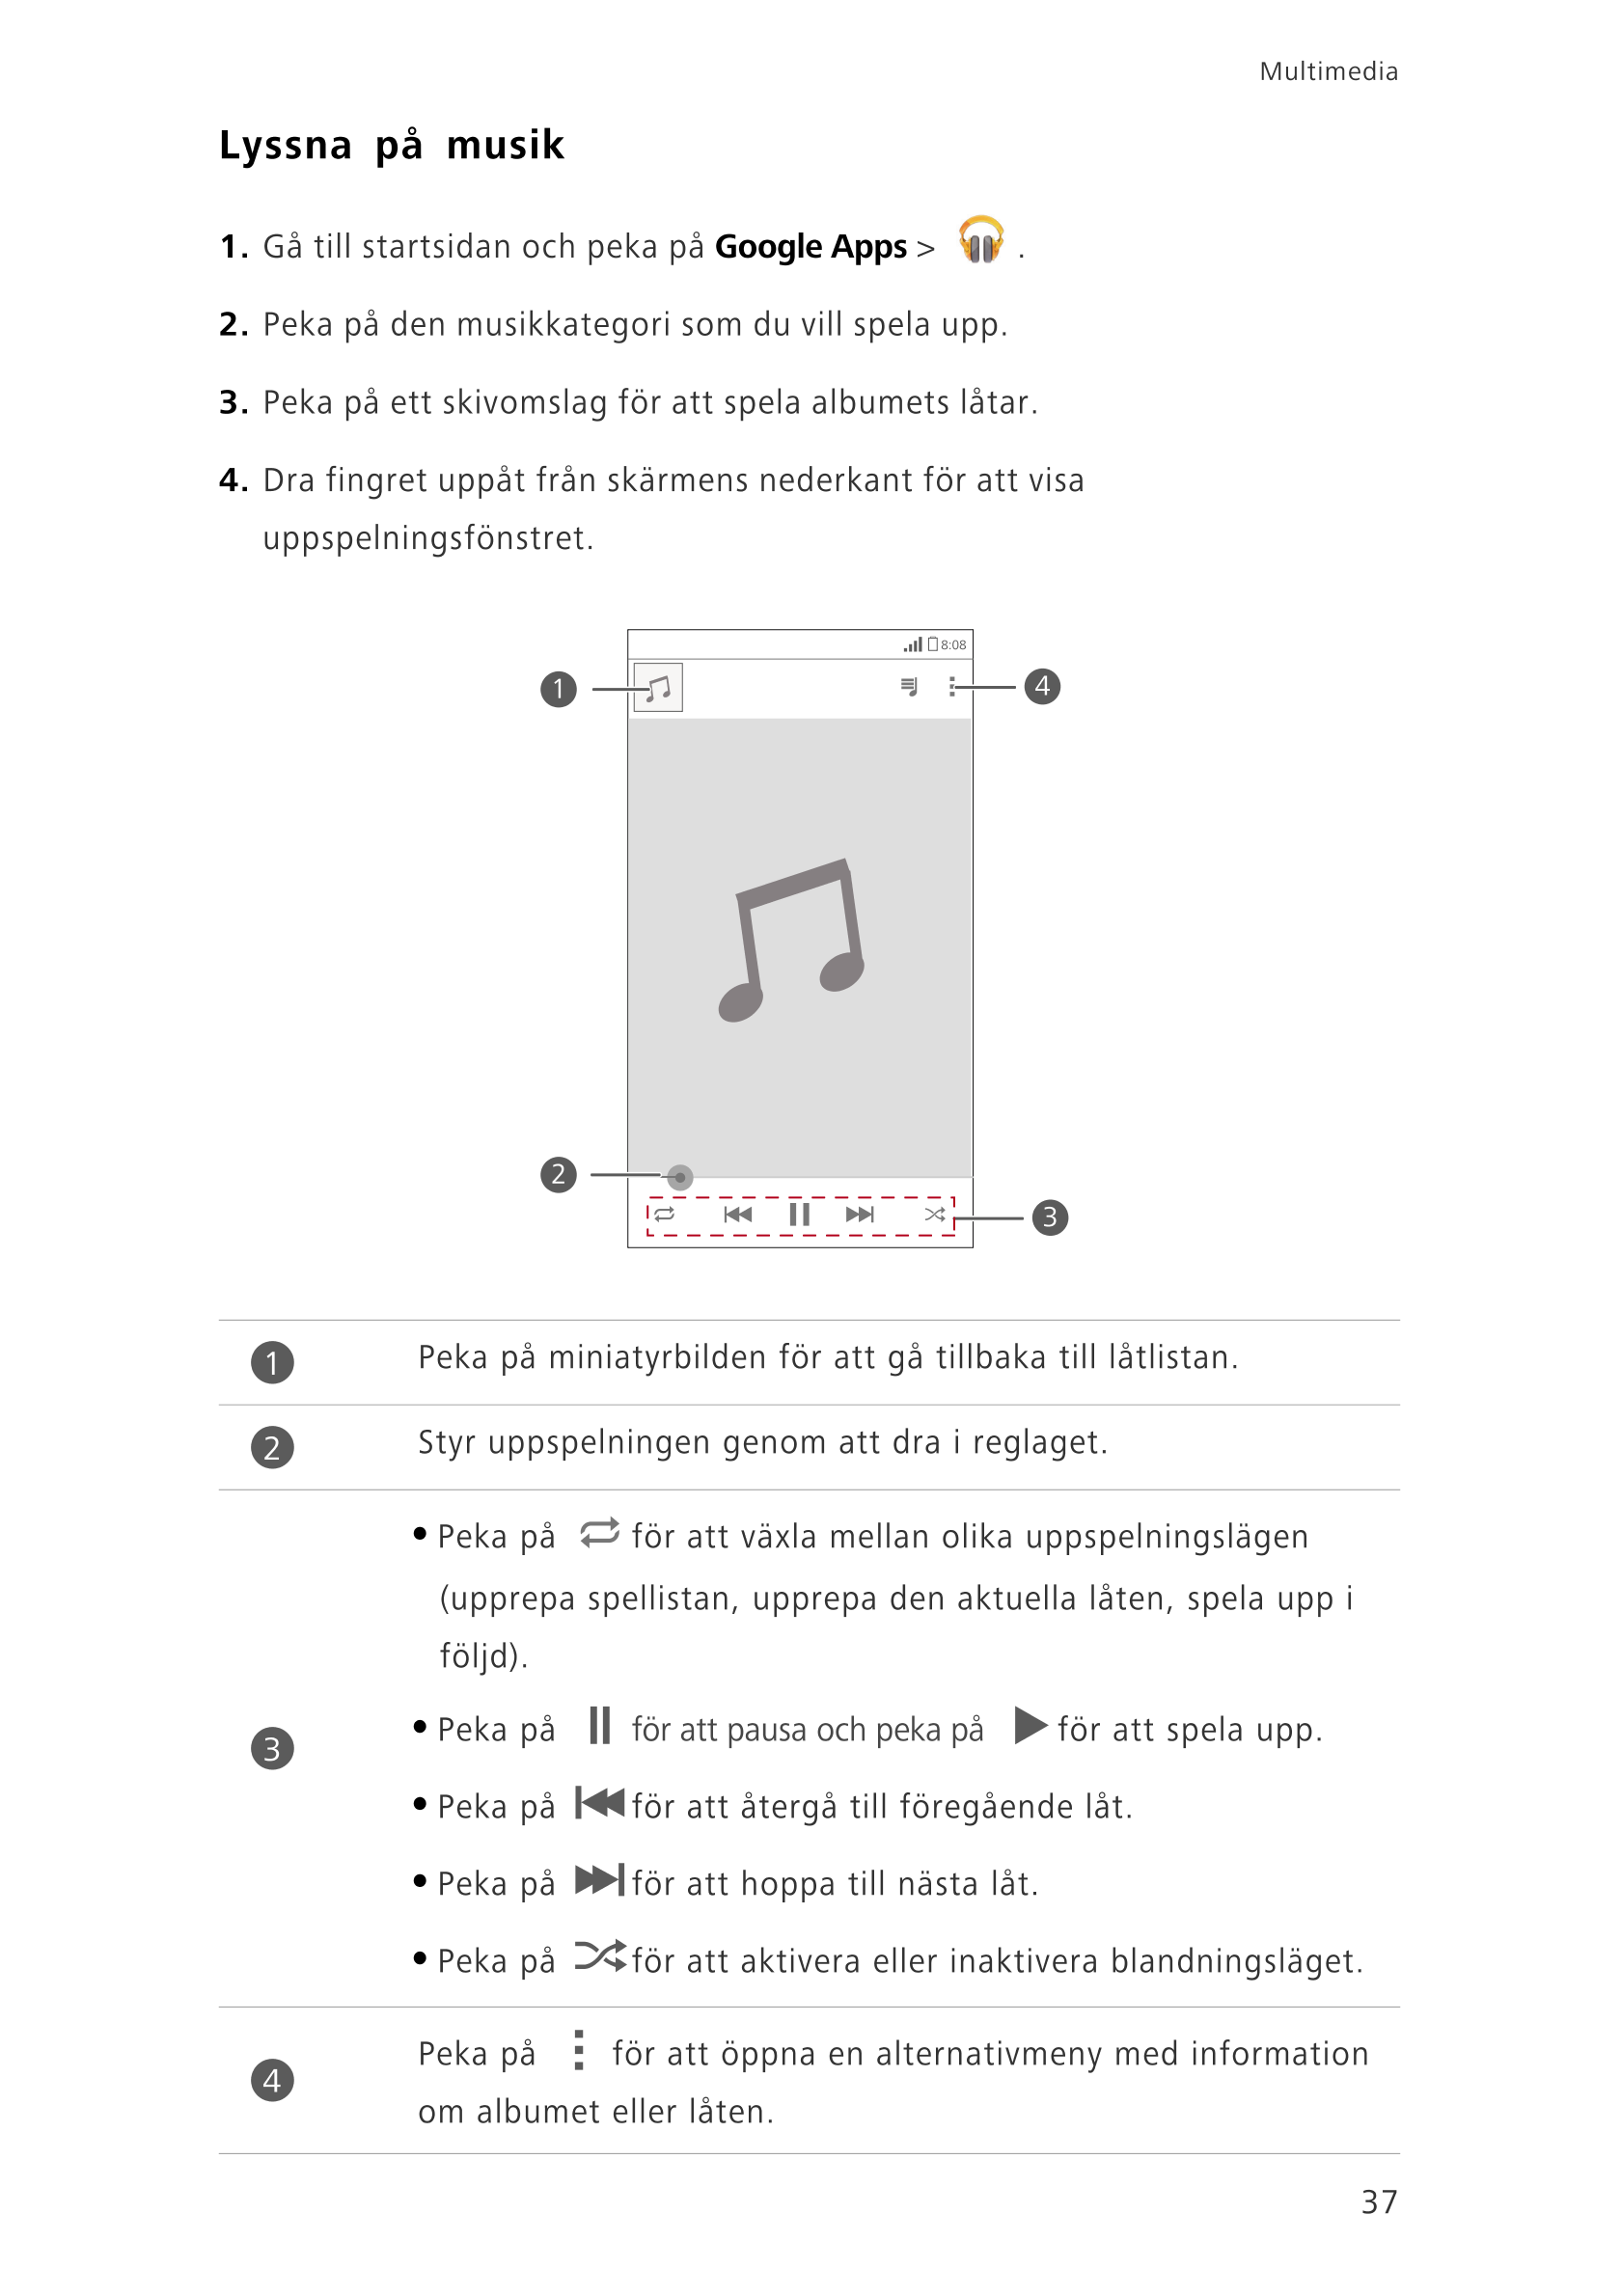 Multimedia
Lyssna på musik
1.  Gå till startsidan och peka på  Google Apps >  .
2.  Peka på den musikkategori som du vill spela 